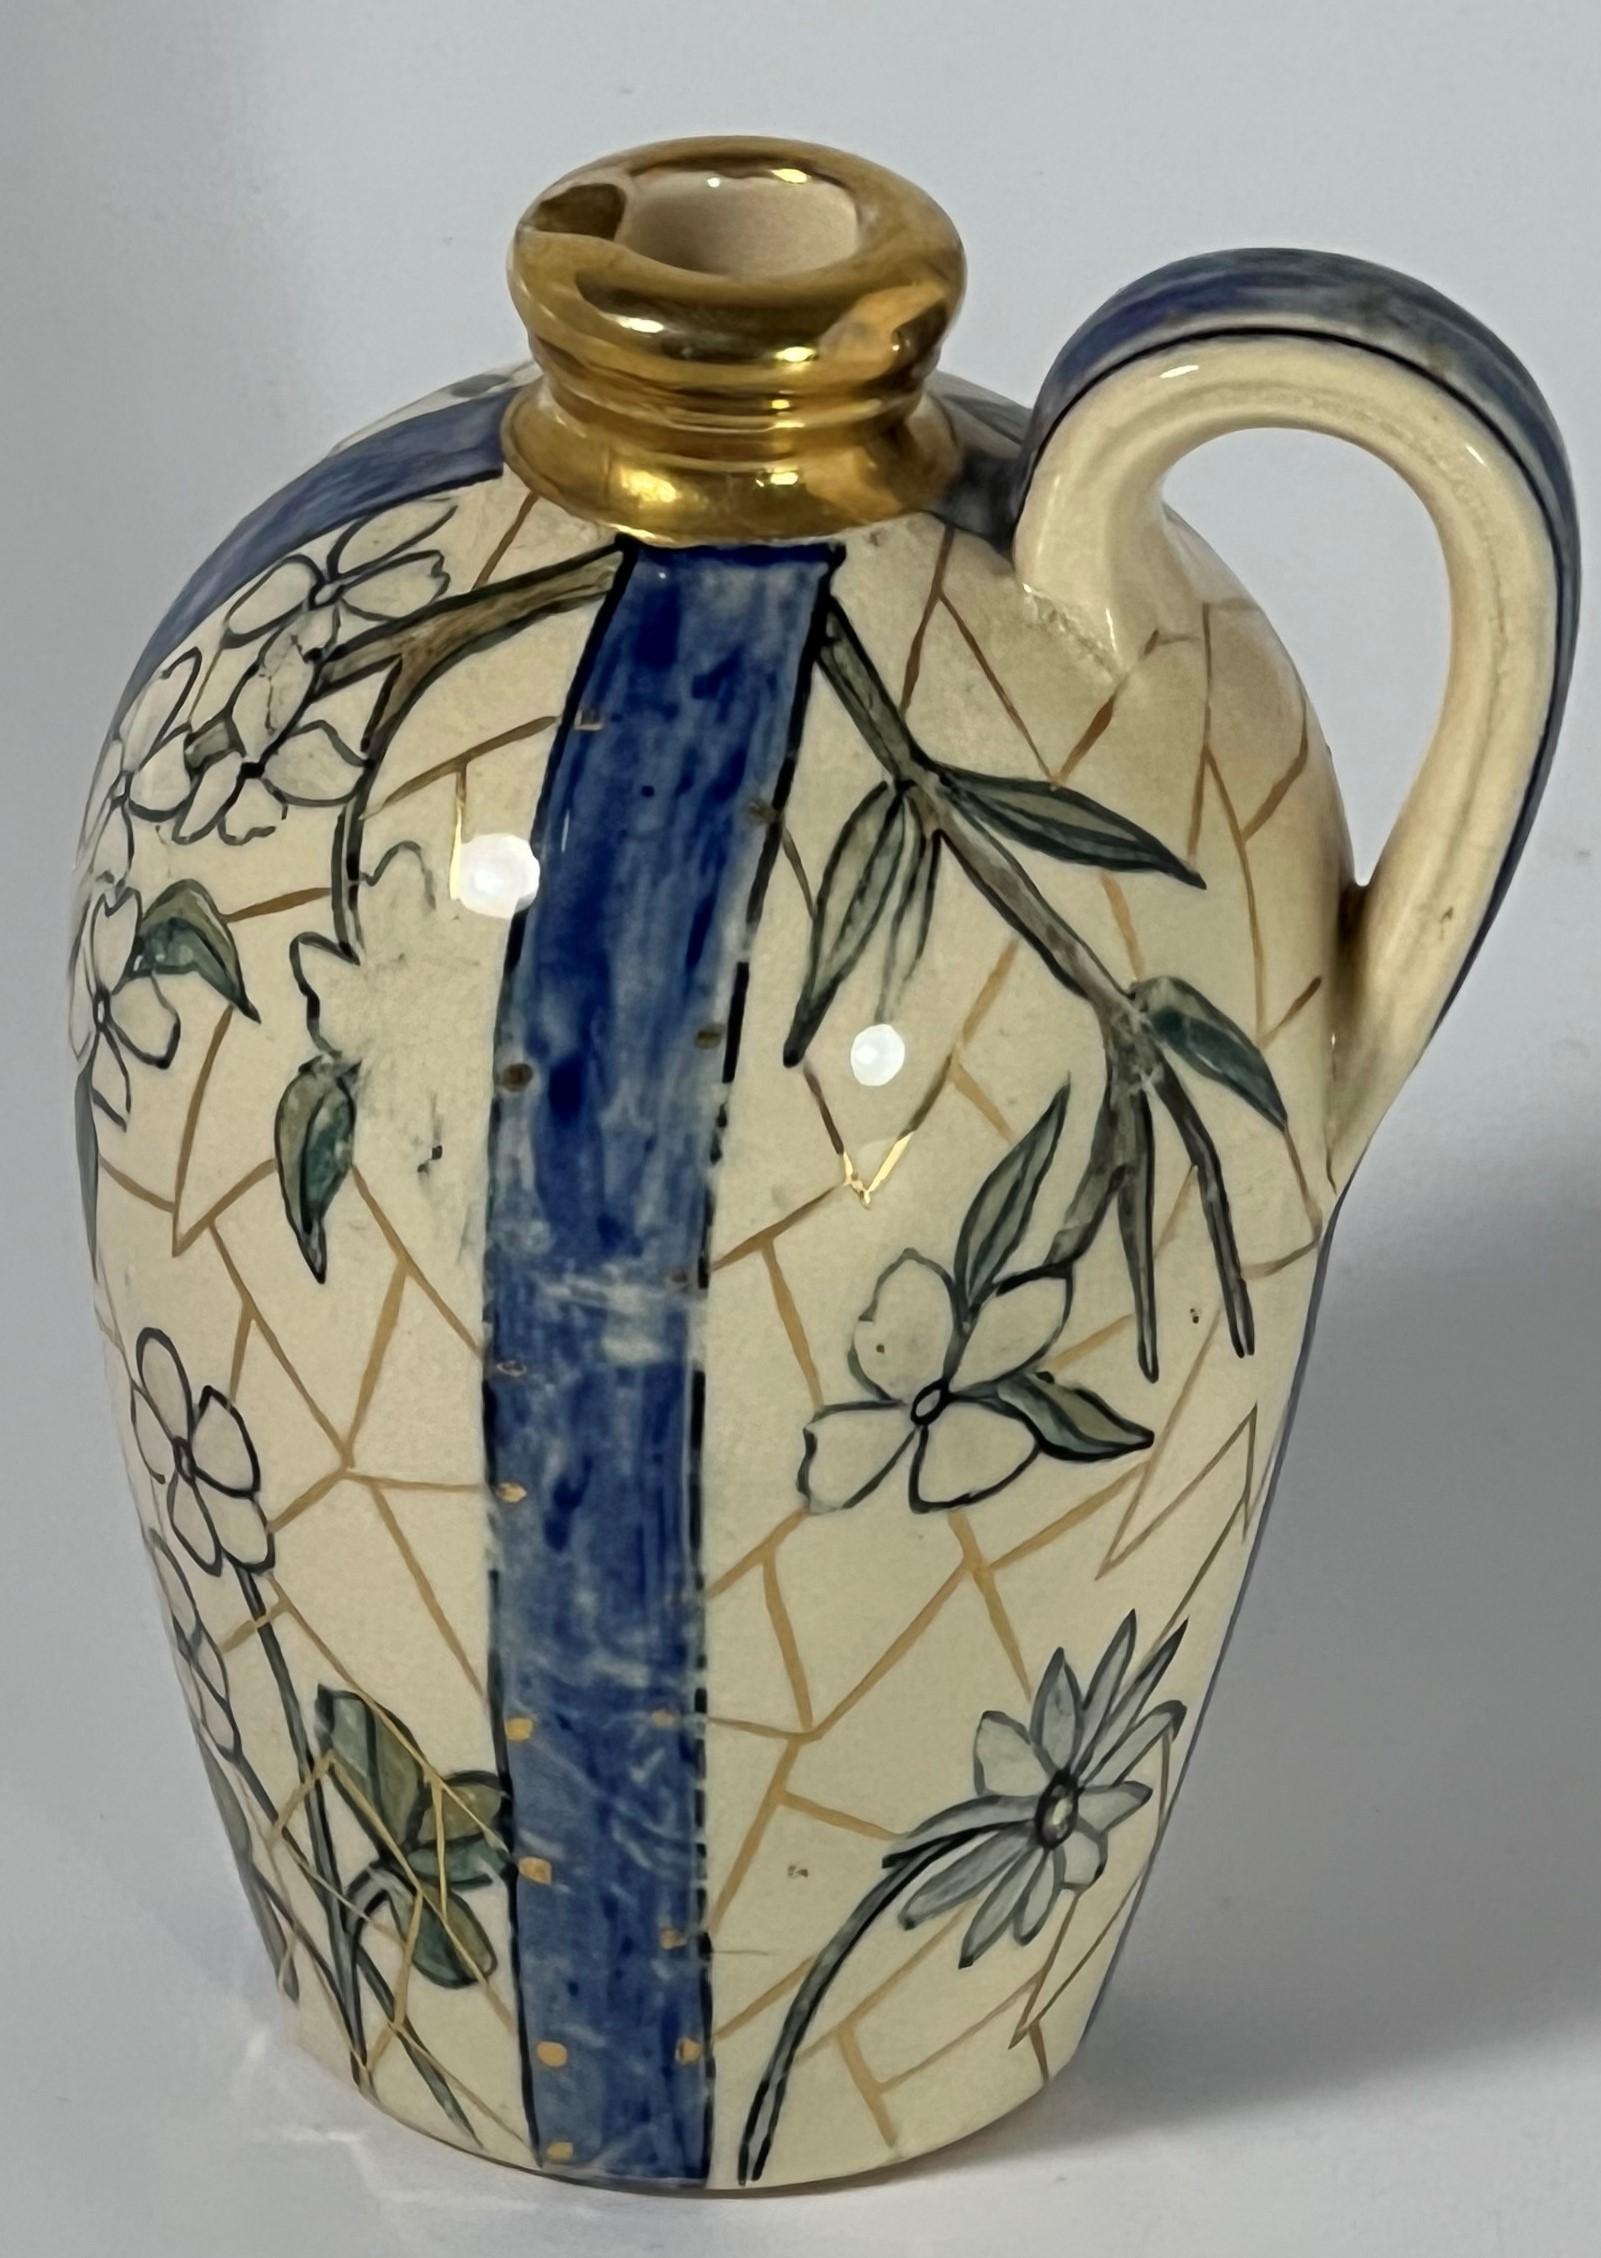 La poterie Rookwood a été créée sur la base des idéaux de l'art et de l'artisanat qui prônent la célébration et l'élévation de la poterie en tant que forme d'art.  Les décorateurs et les potiers professionnels et amateurs ont contribué au succès de